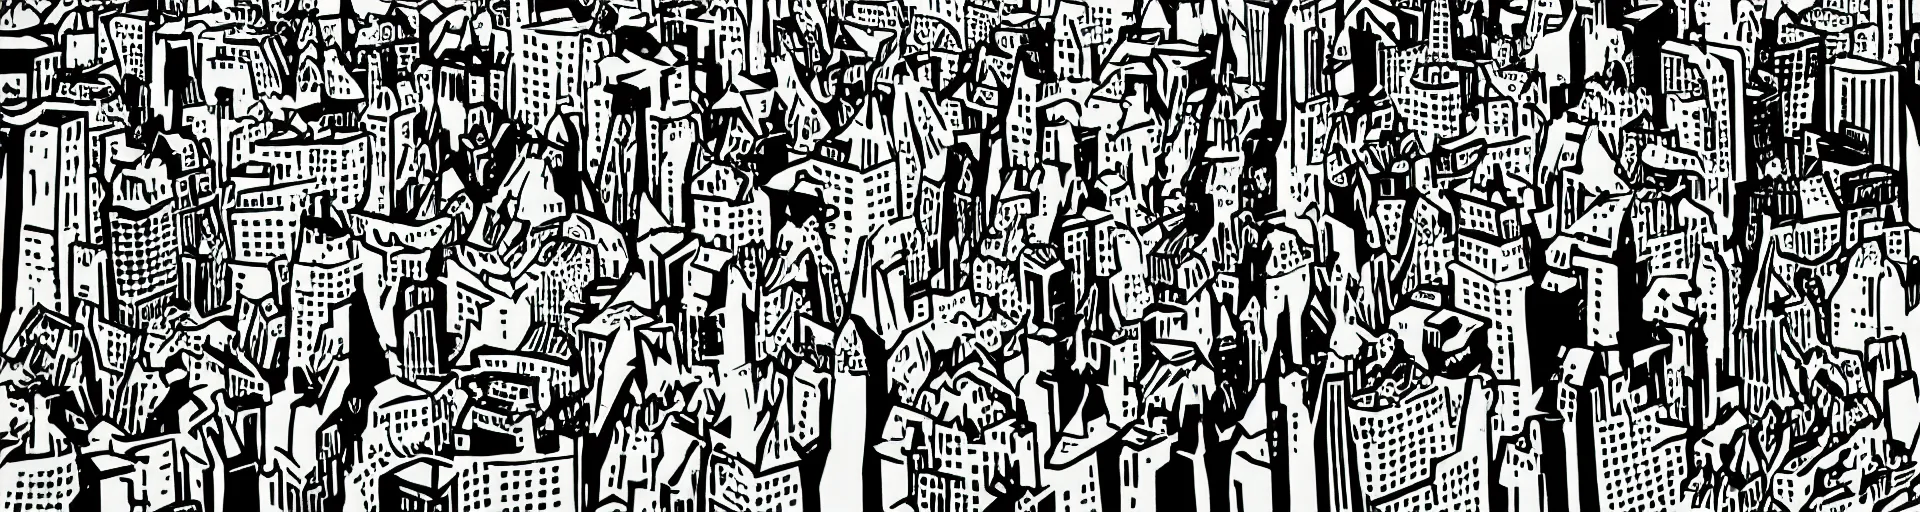 Prompt: birds in the city by roy lichtenstein